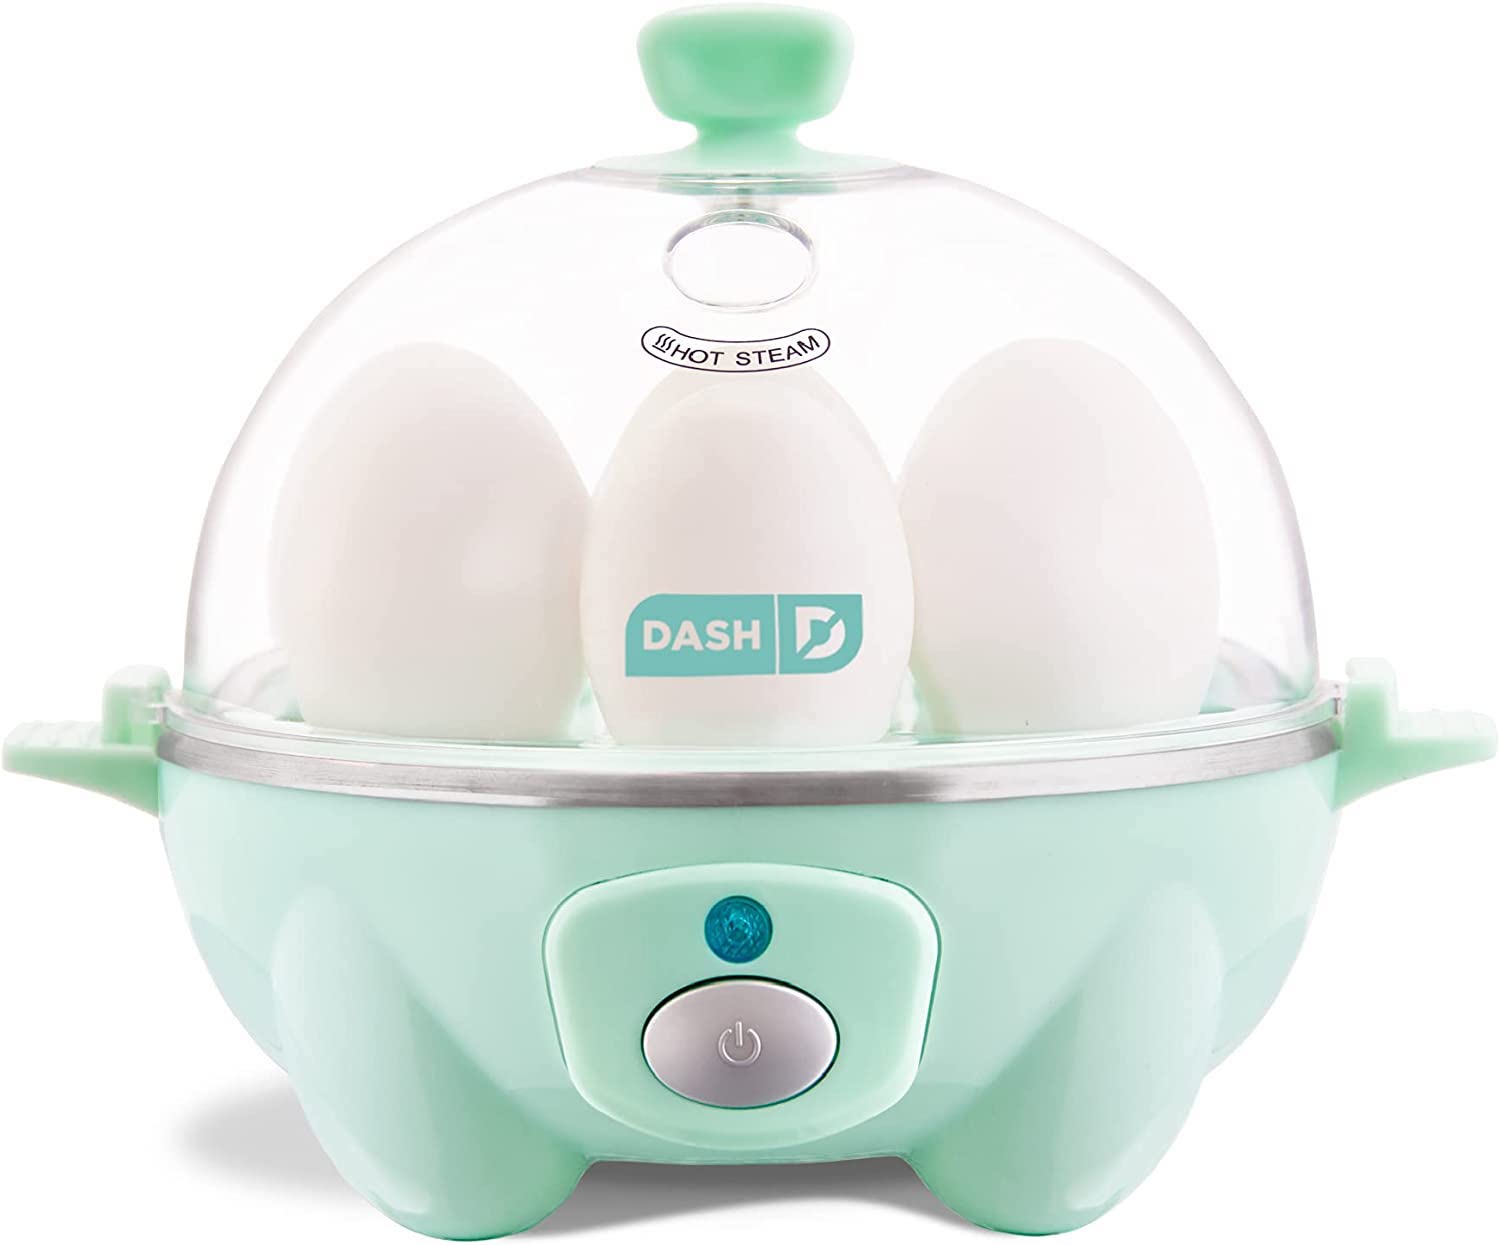 Dash egg maker